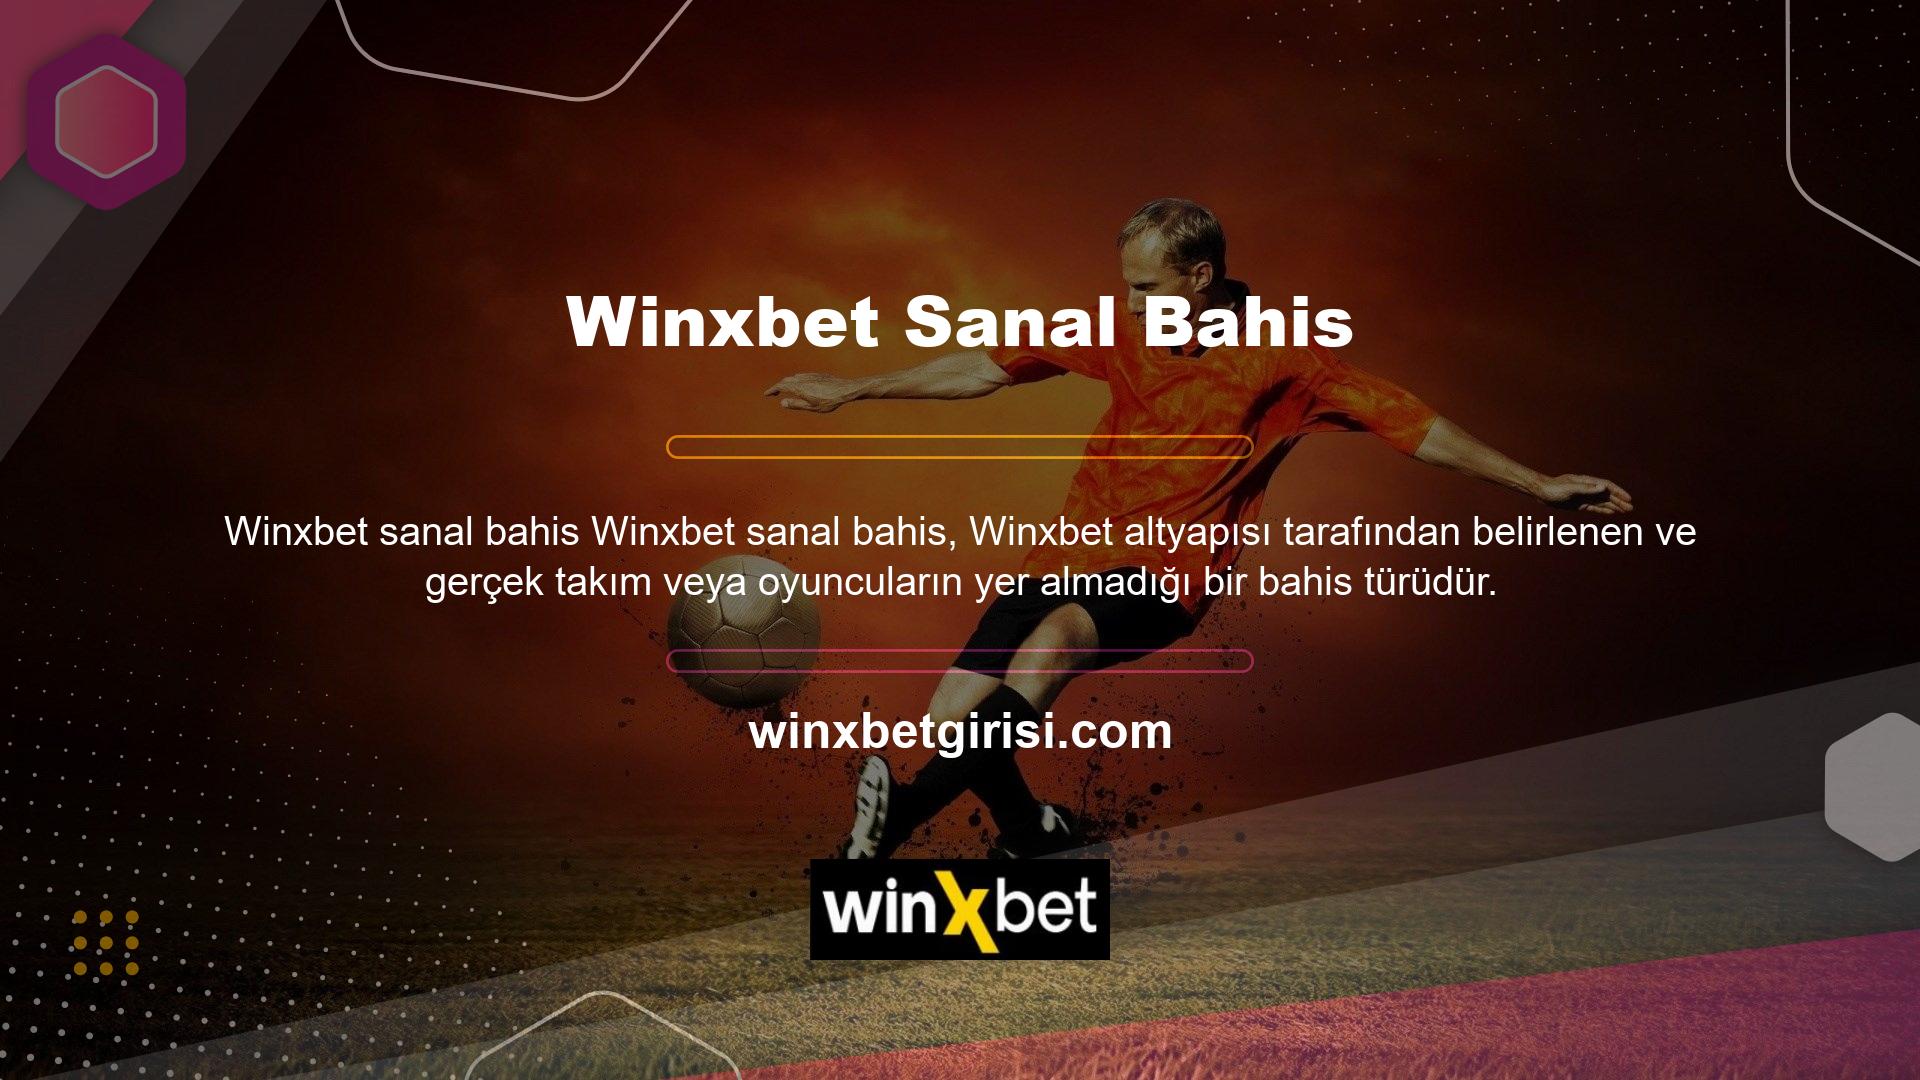 Maç ve tüm maçlar Winxbet girişindeki sanal bahis bölümündeki özel bir ekranda izlenebilir